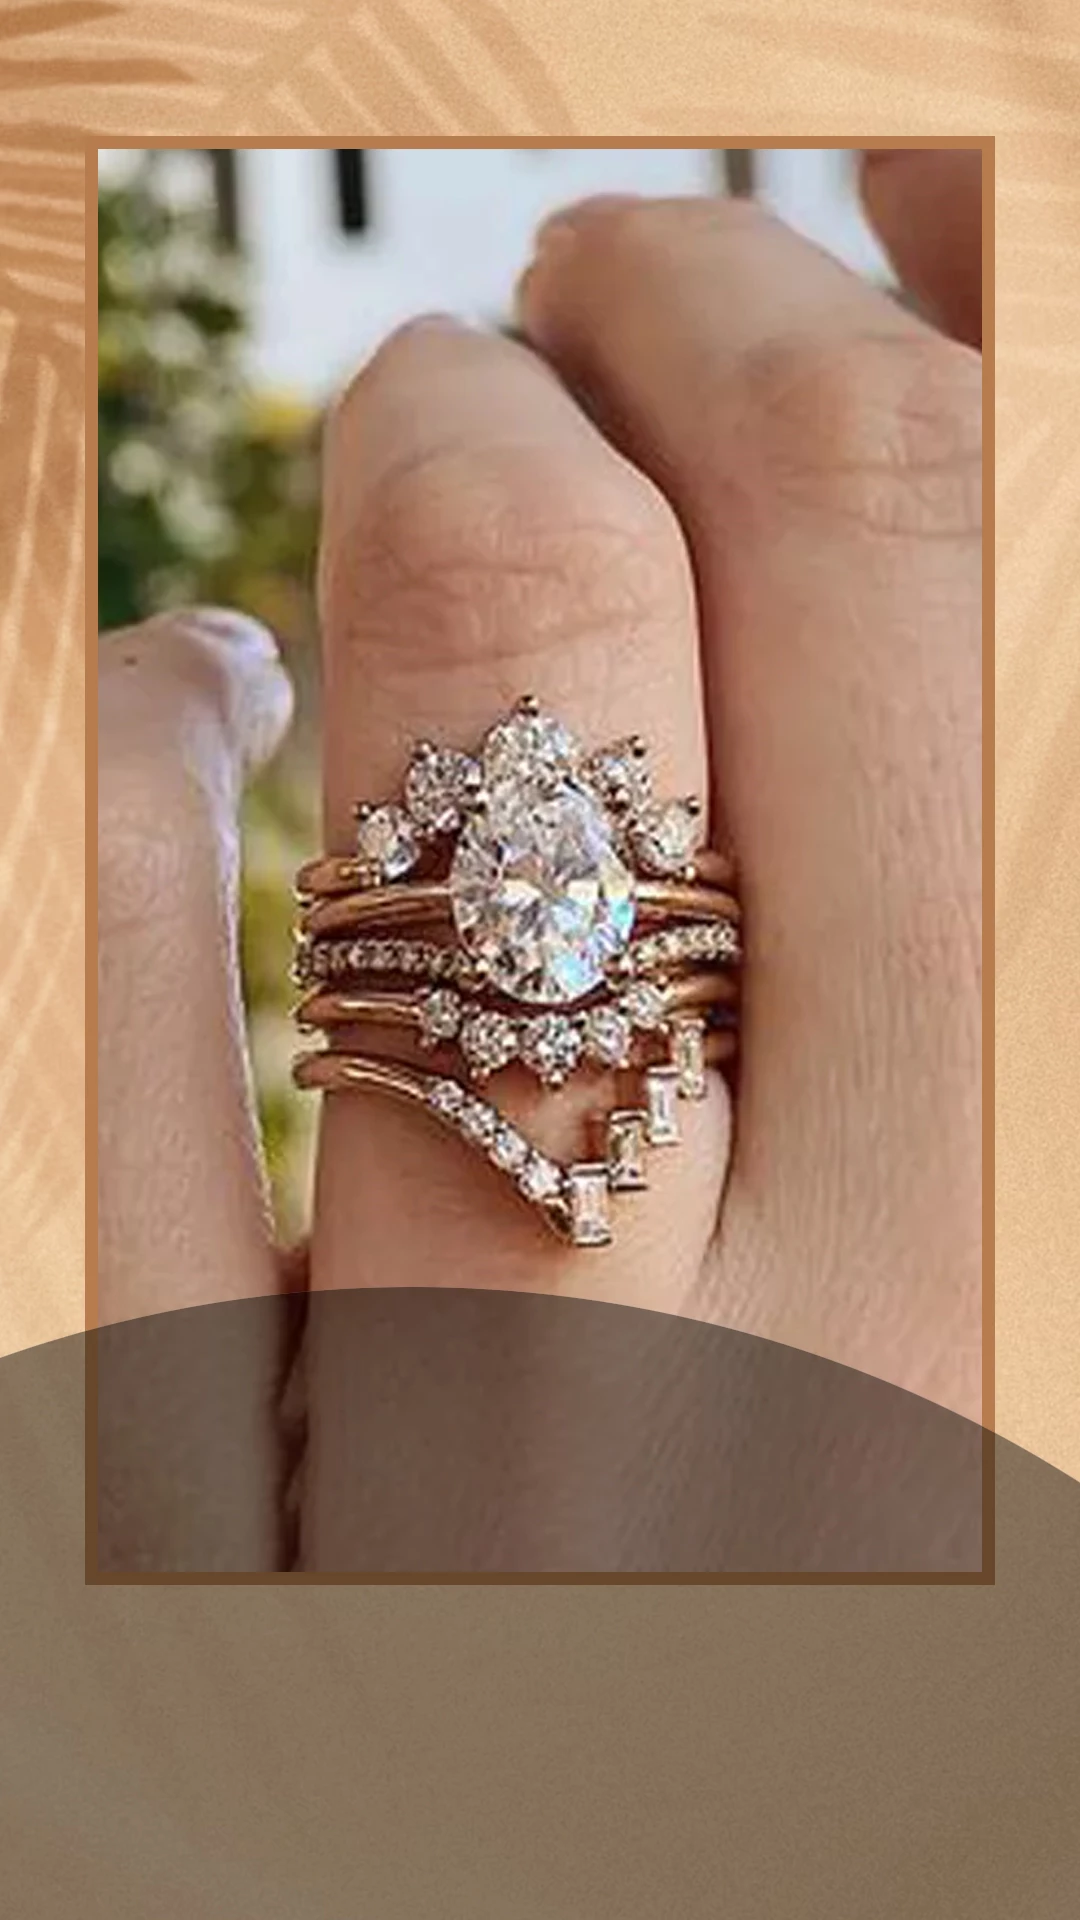 Engagement Rings Online | Diamond Registry